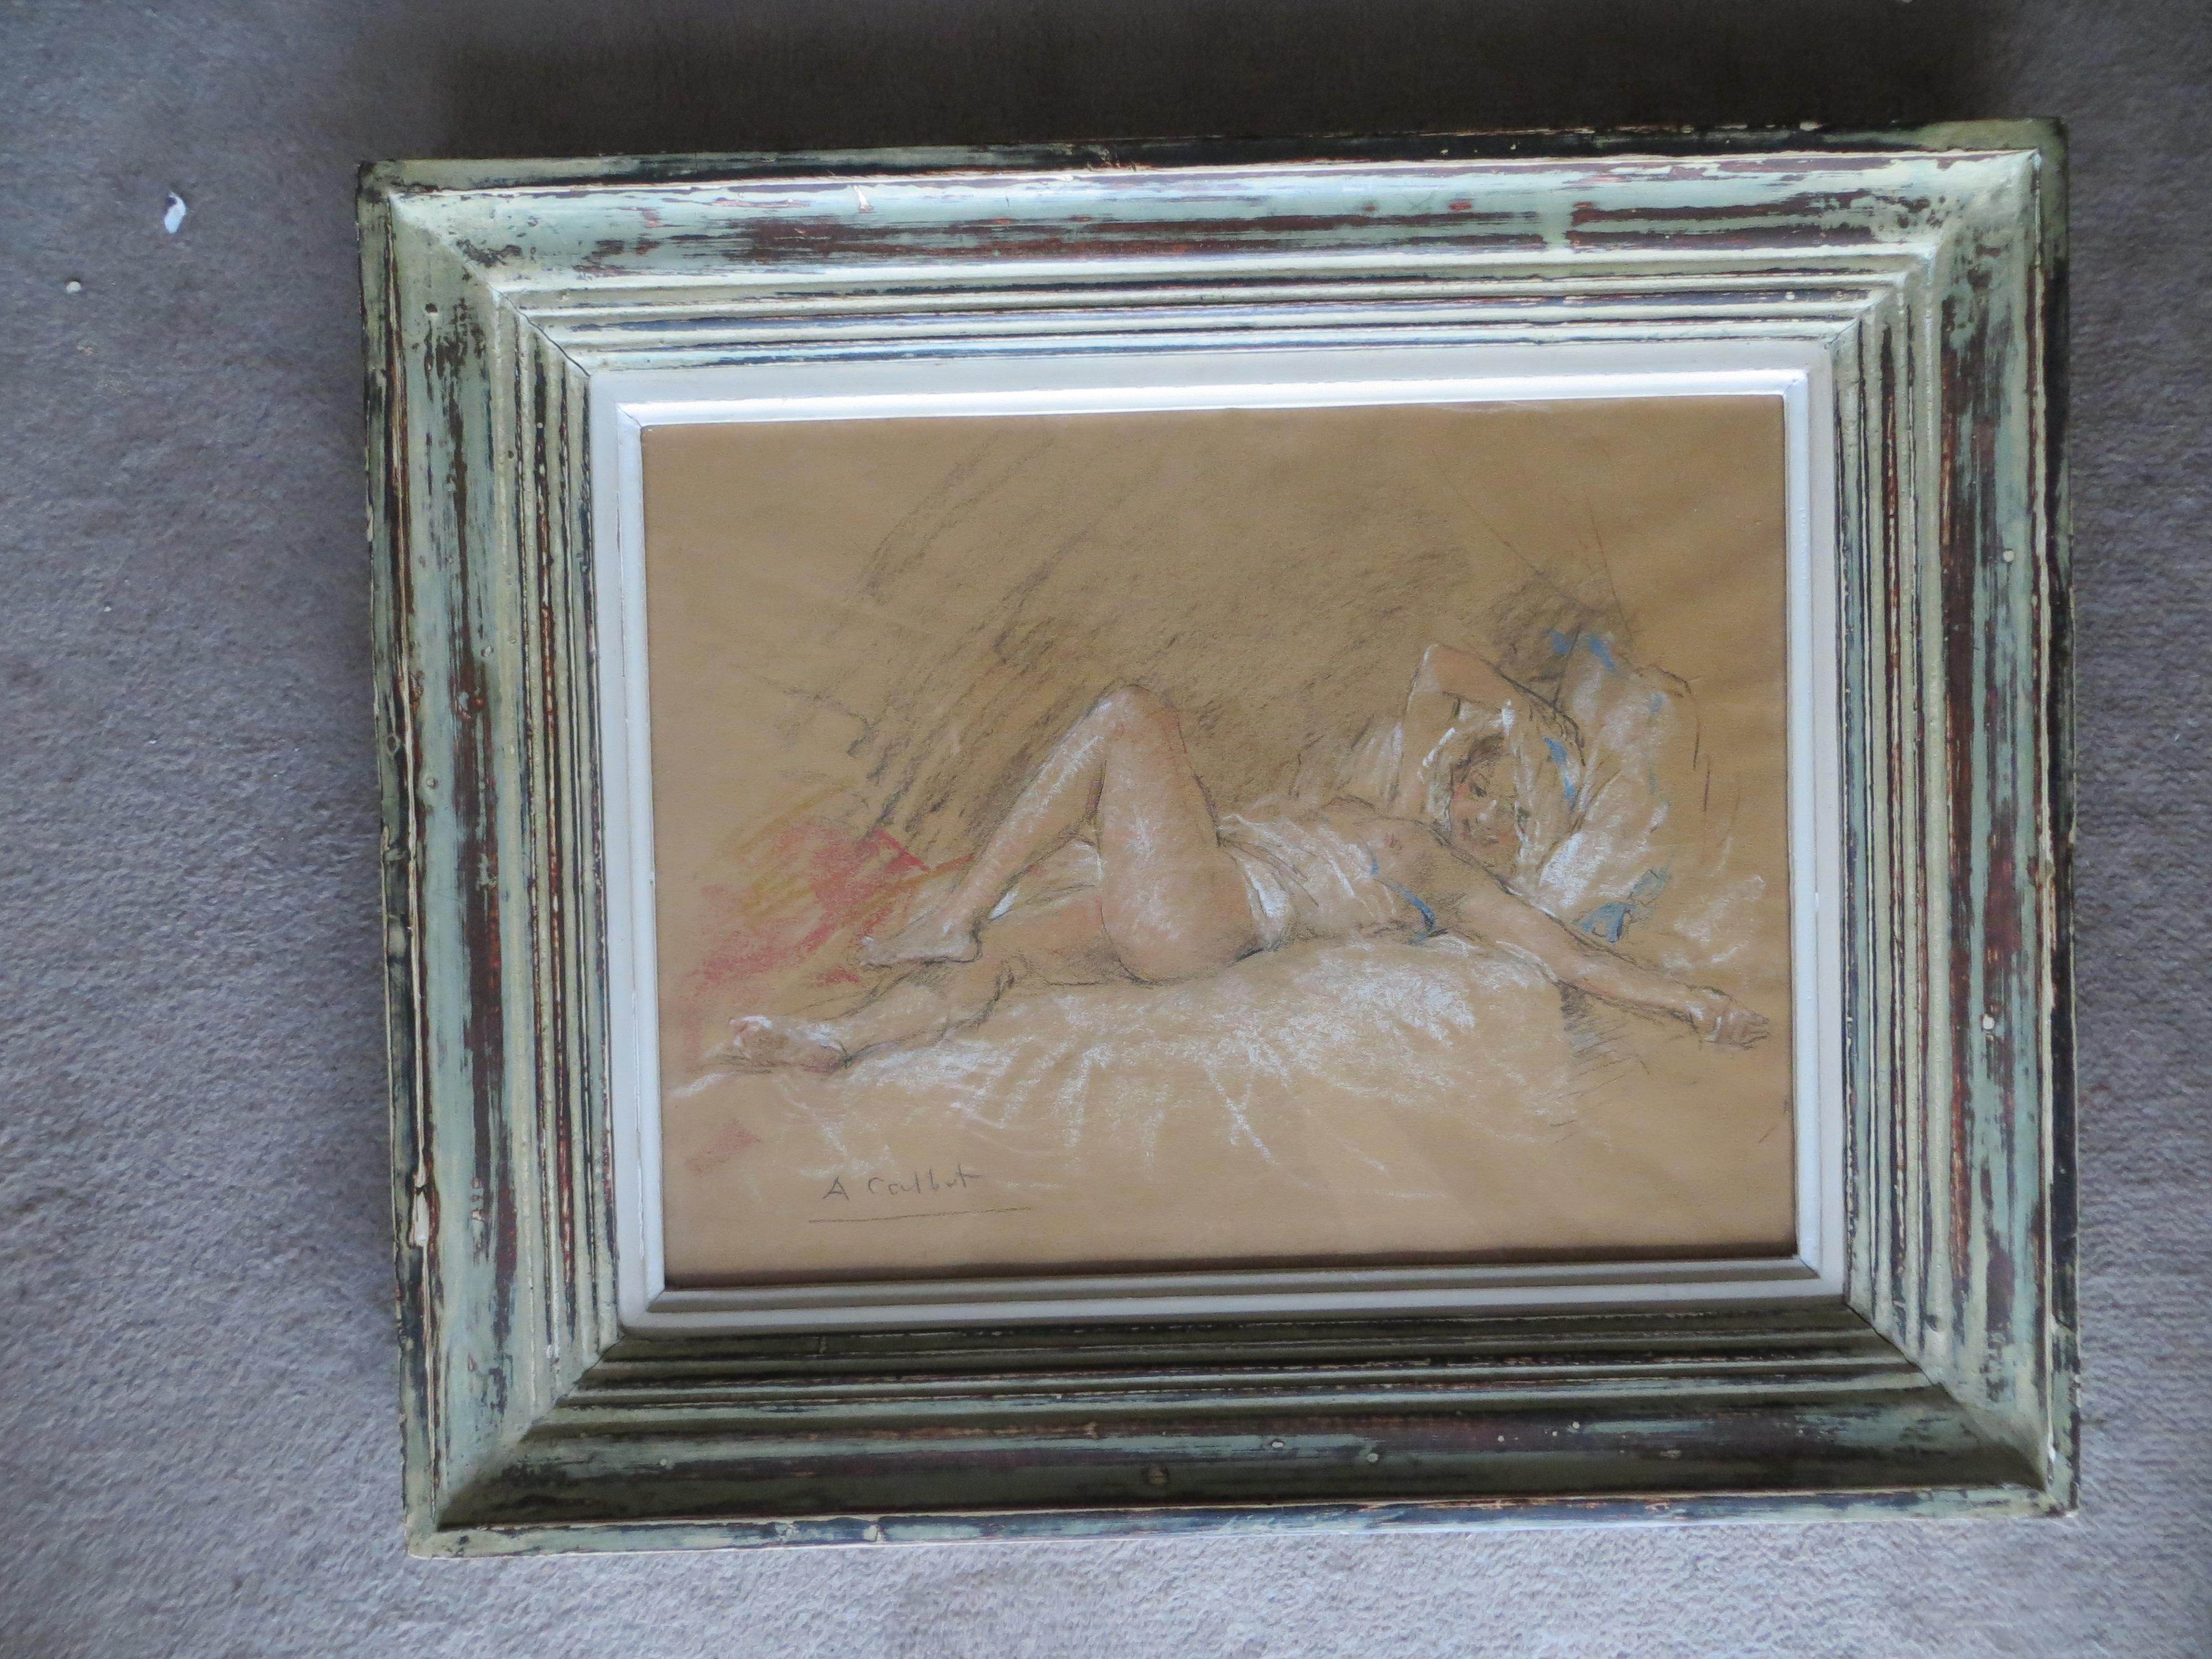 Nudefarbene Slumbers (Grau), Figurative Art, von Antoine Calbet